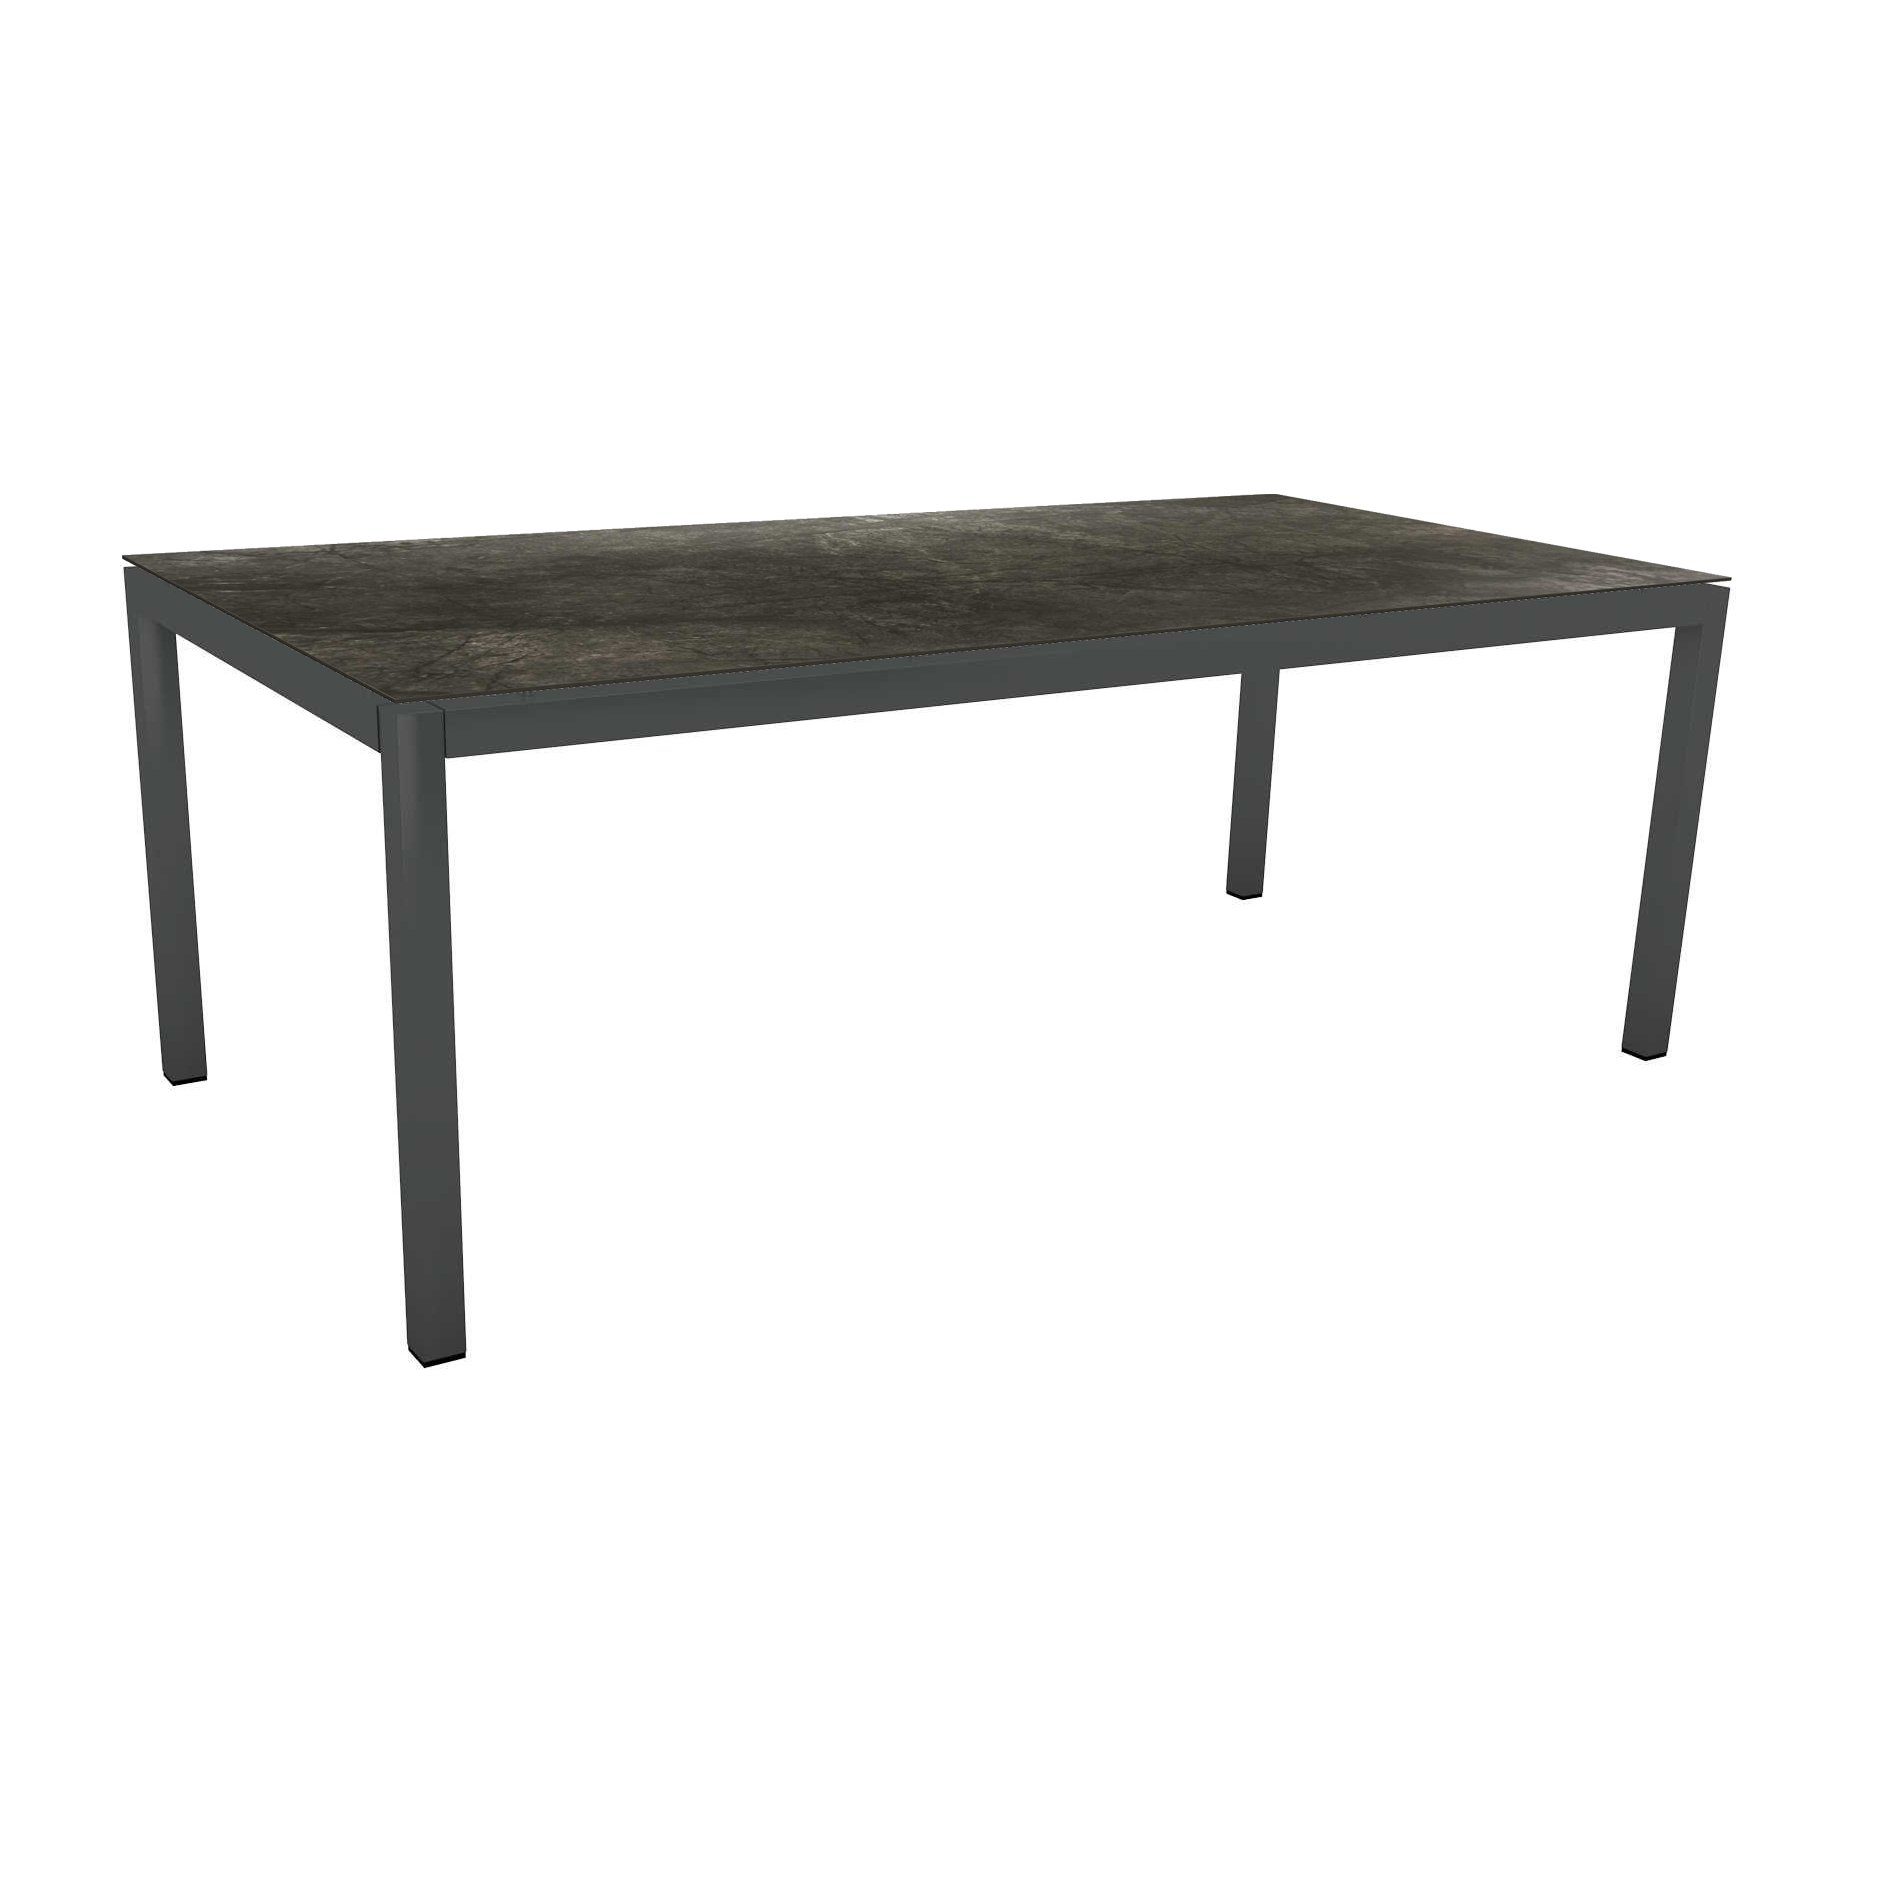 Stern Tischsystem Gartentisch, Gestell Aluminium anthrazit, Tischplatte HPL Dark Marble, Maße: 200x100 cm